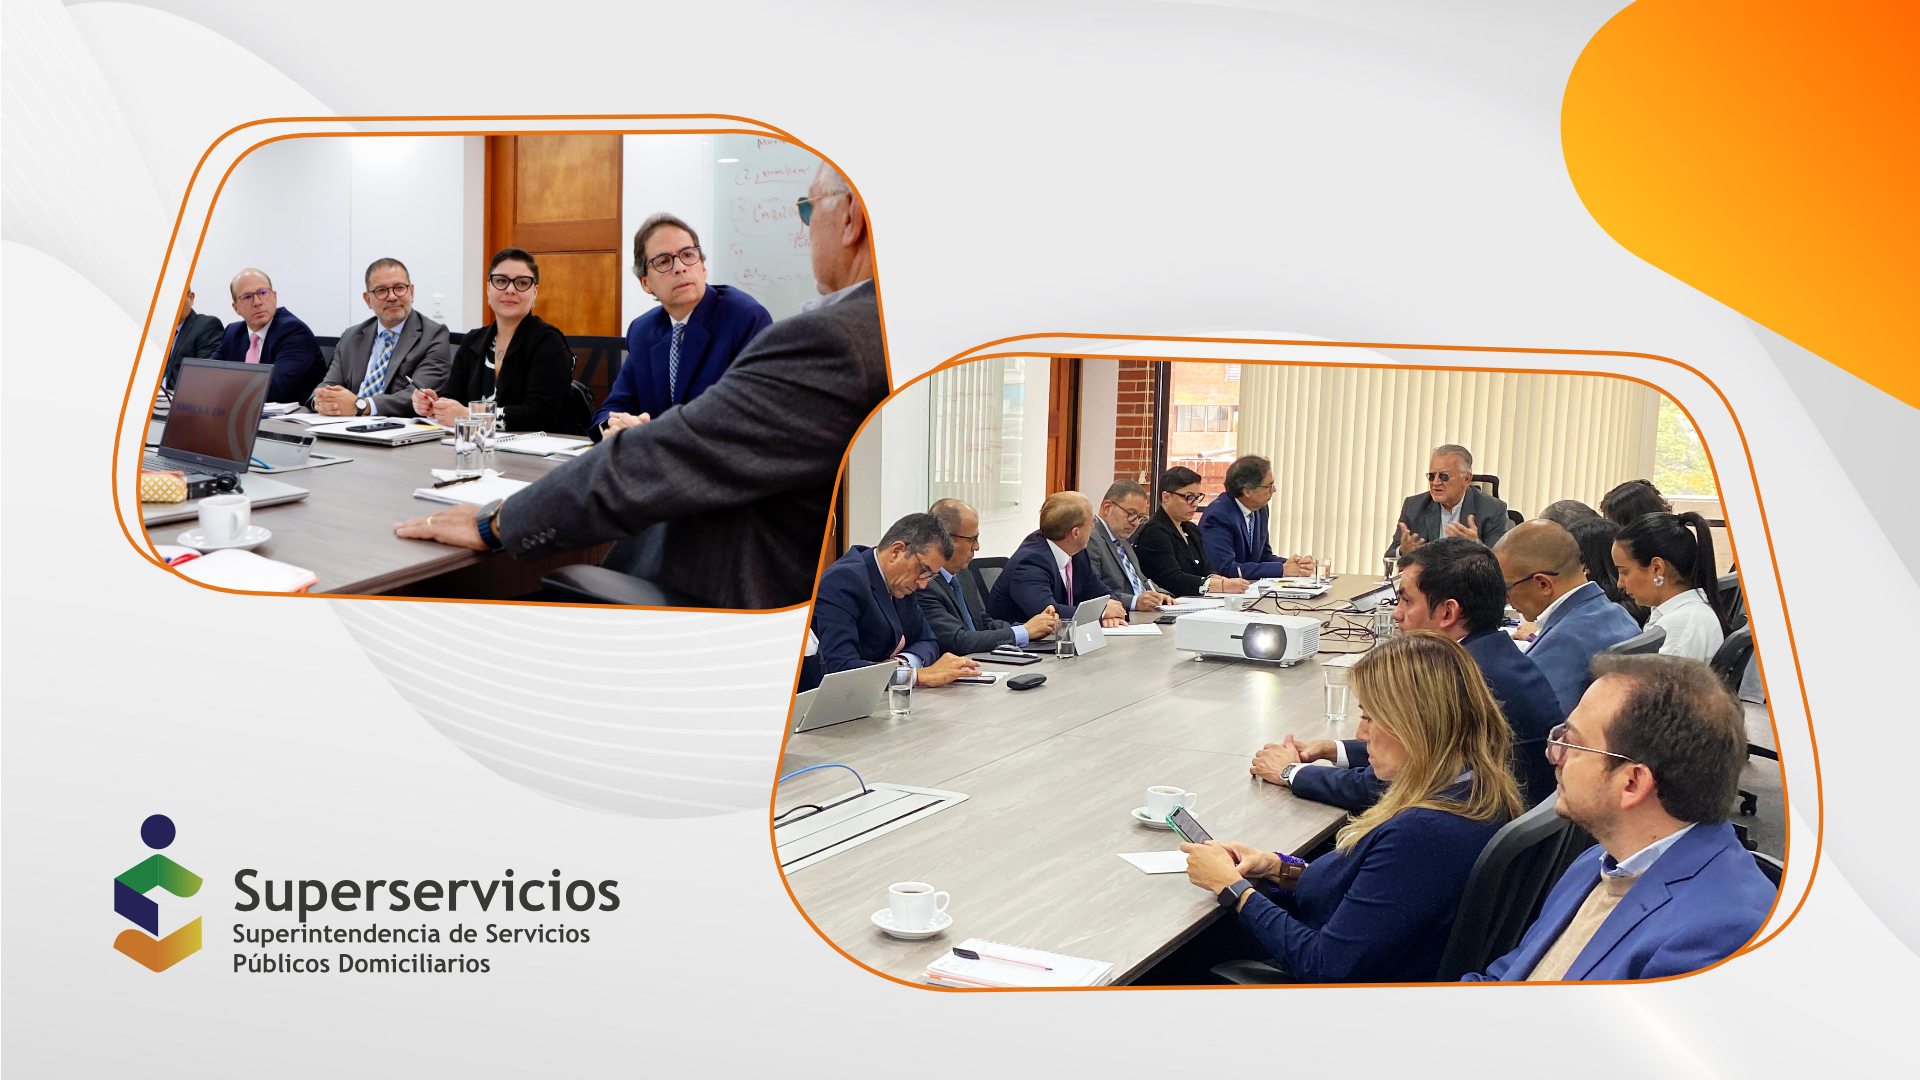 Superservicios evaluó a Vanti S.A. en quinta mesa de trabajo con grupos empresariales del sector
